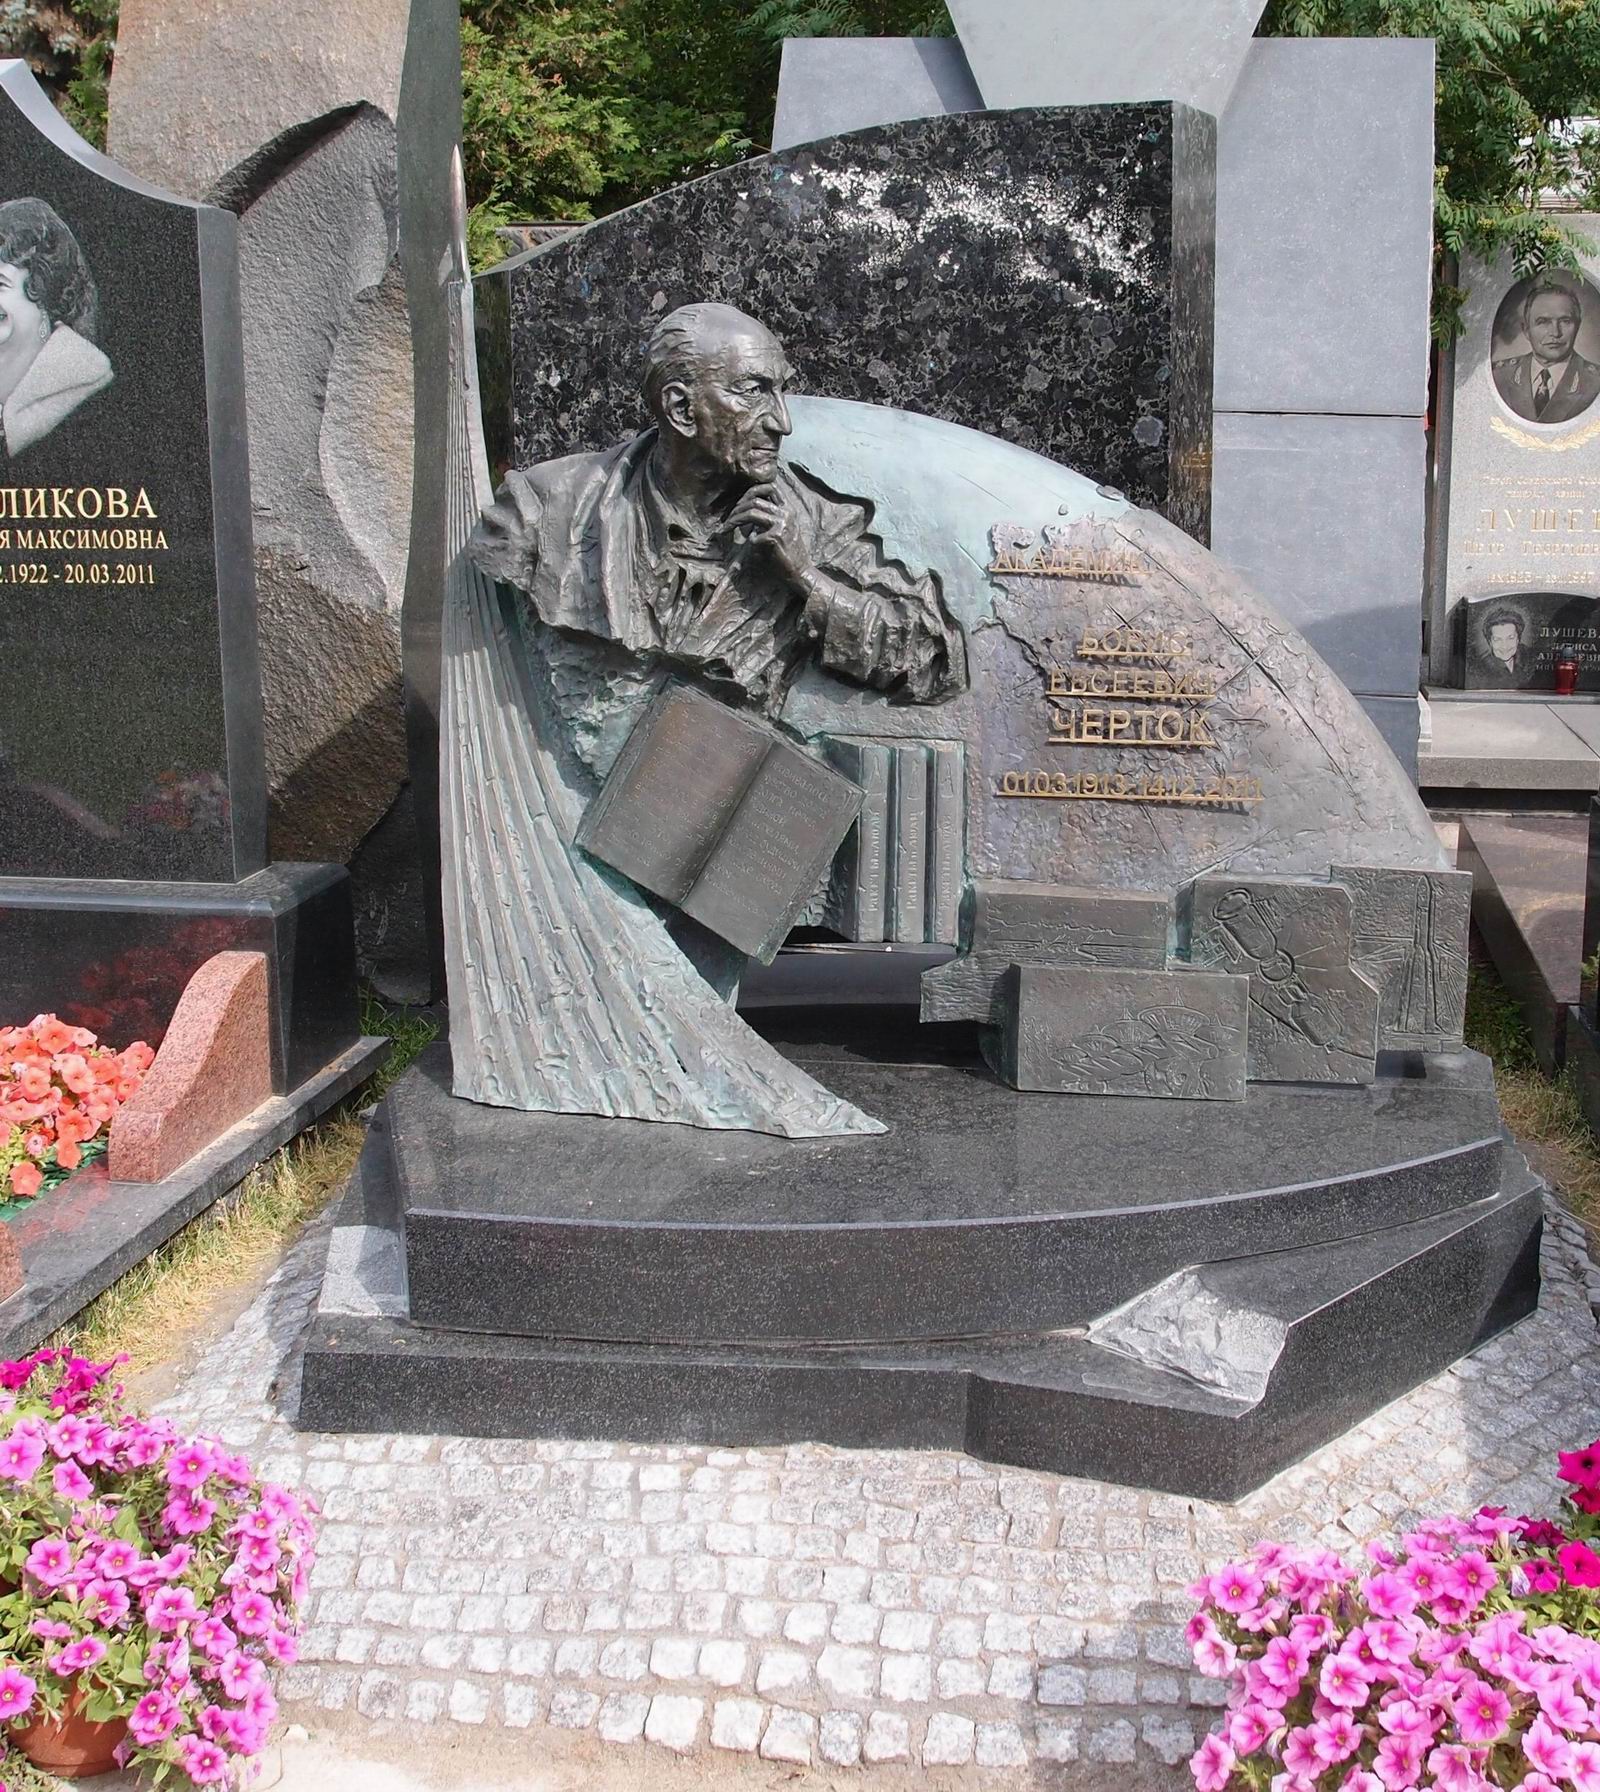 Памятник на могиле Чертока Б.Е. (1912-2011), ск. Я.Бородин, на Новодевичьем кладбище (11-6-7). Нажмите левую кнопку мыши чтобы увидеть фрагмент памятника.